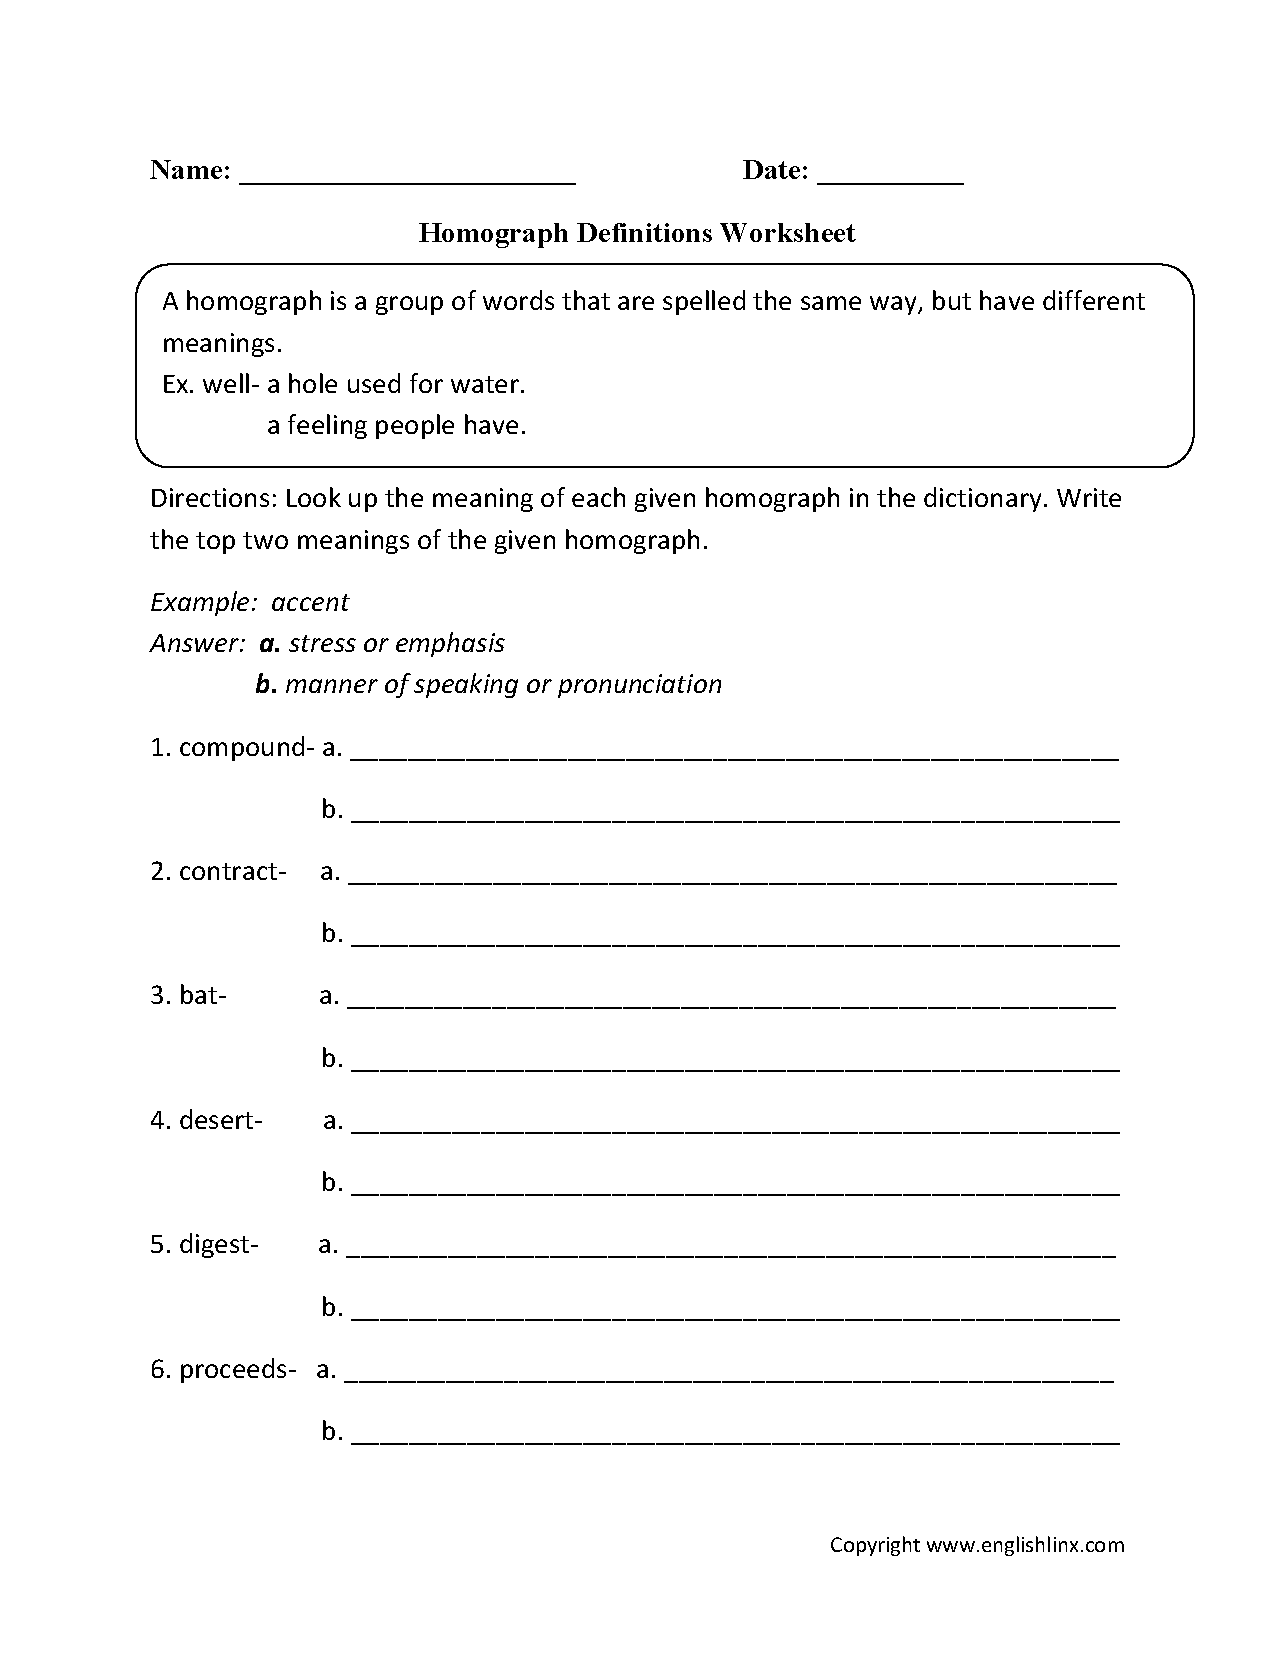 vocabulary-worksheets-homograph-worksheets